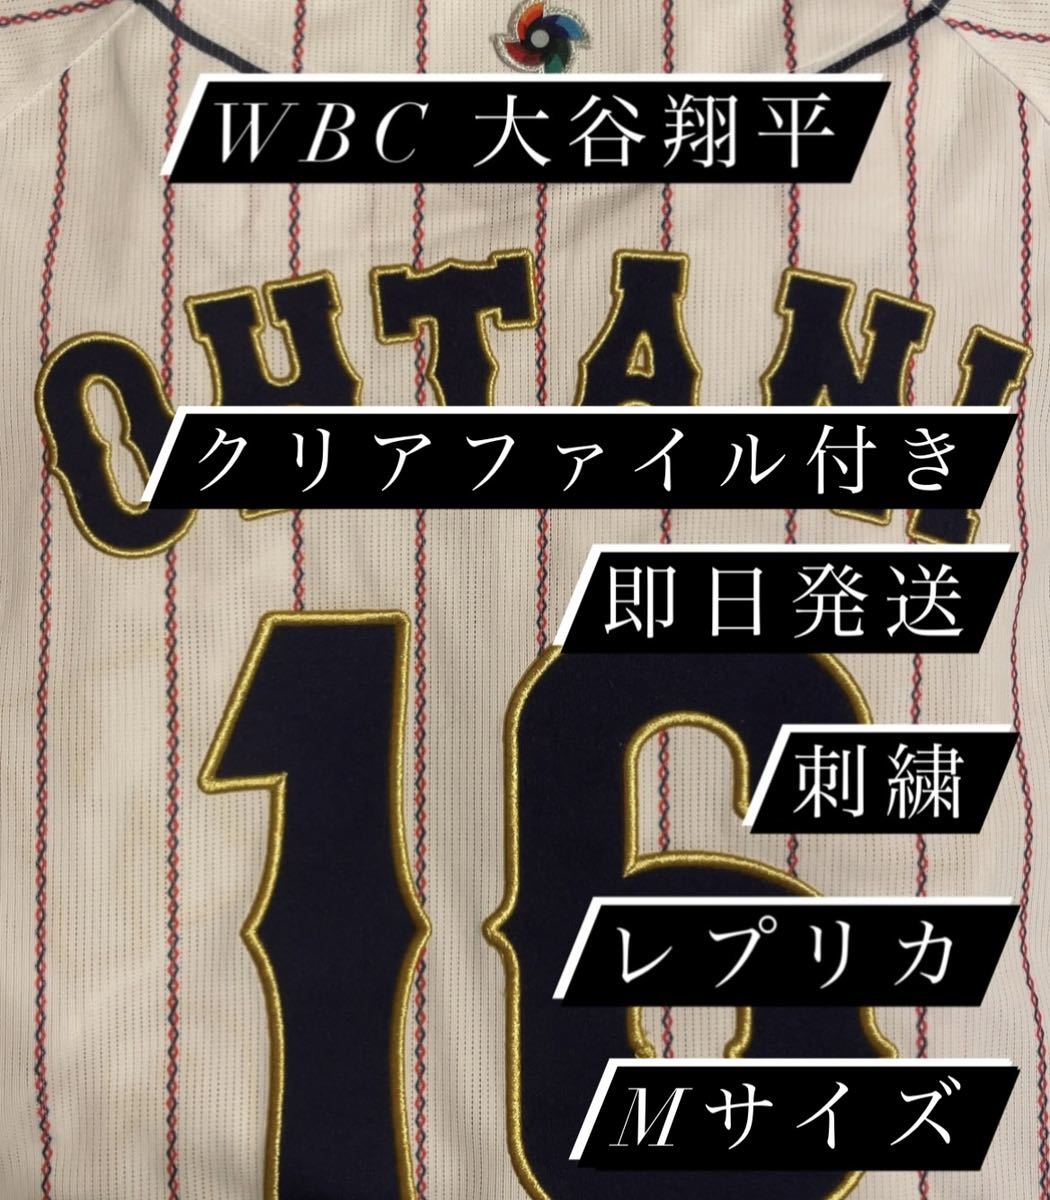 WBC 大谷翔平 レプリカユニフォーム Mサイズ 刺繍 OHTANI クリア